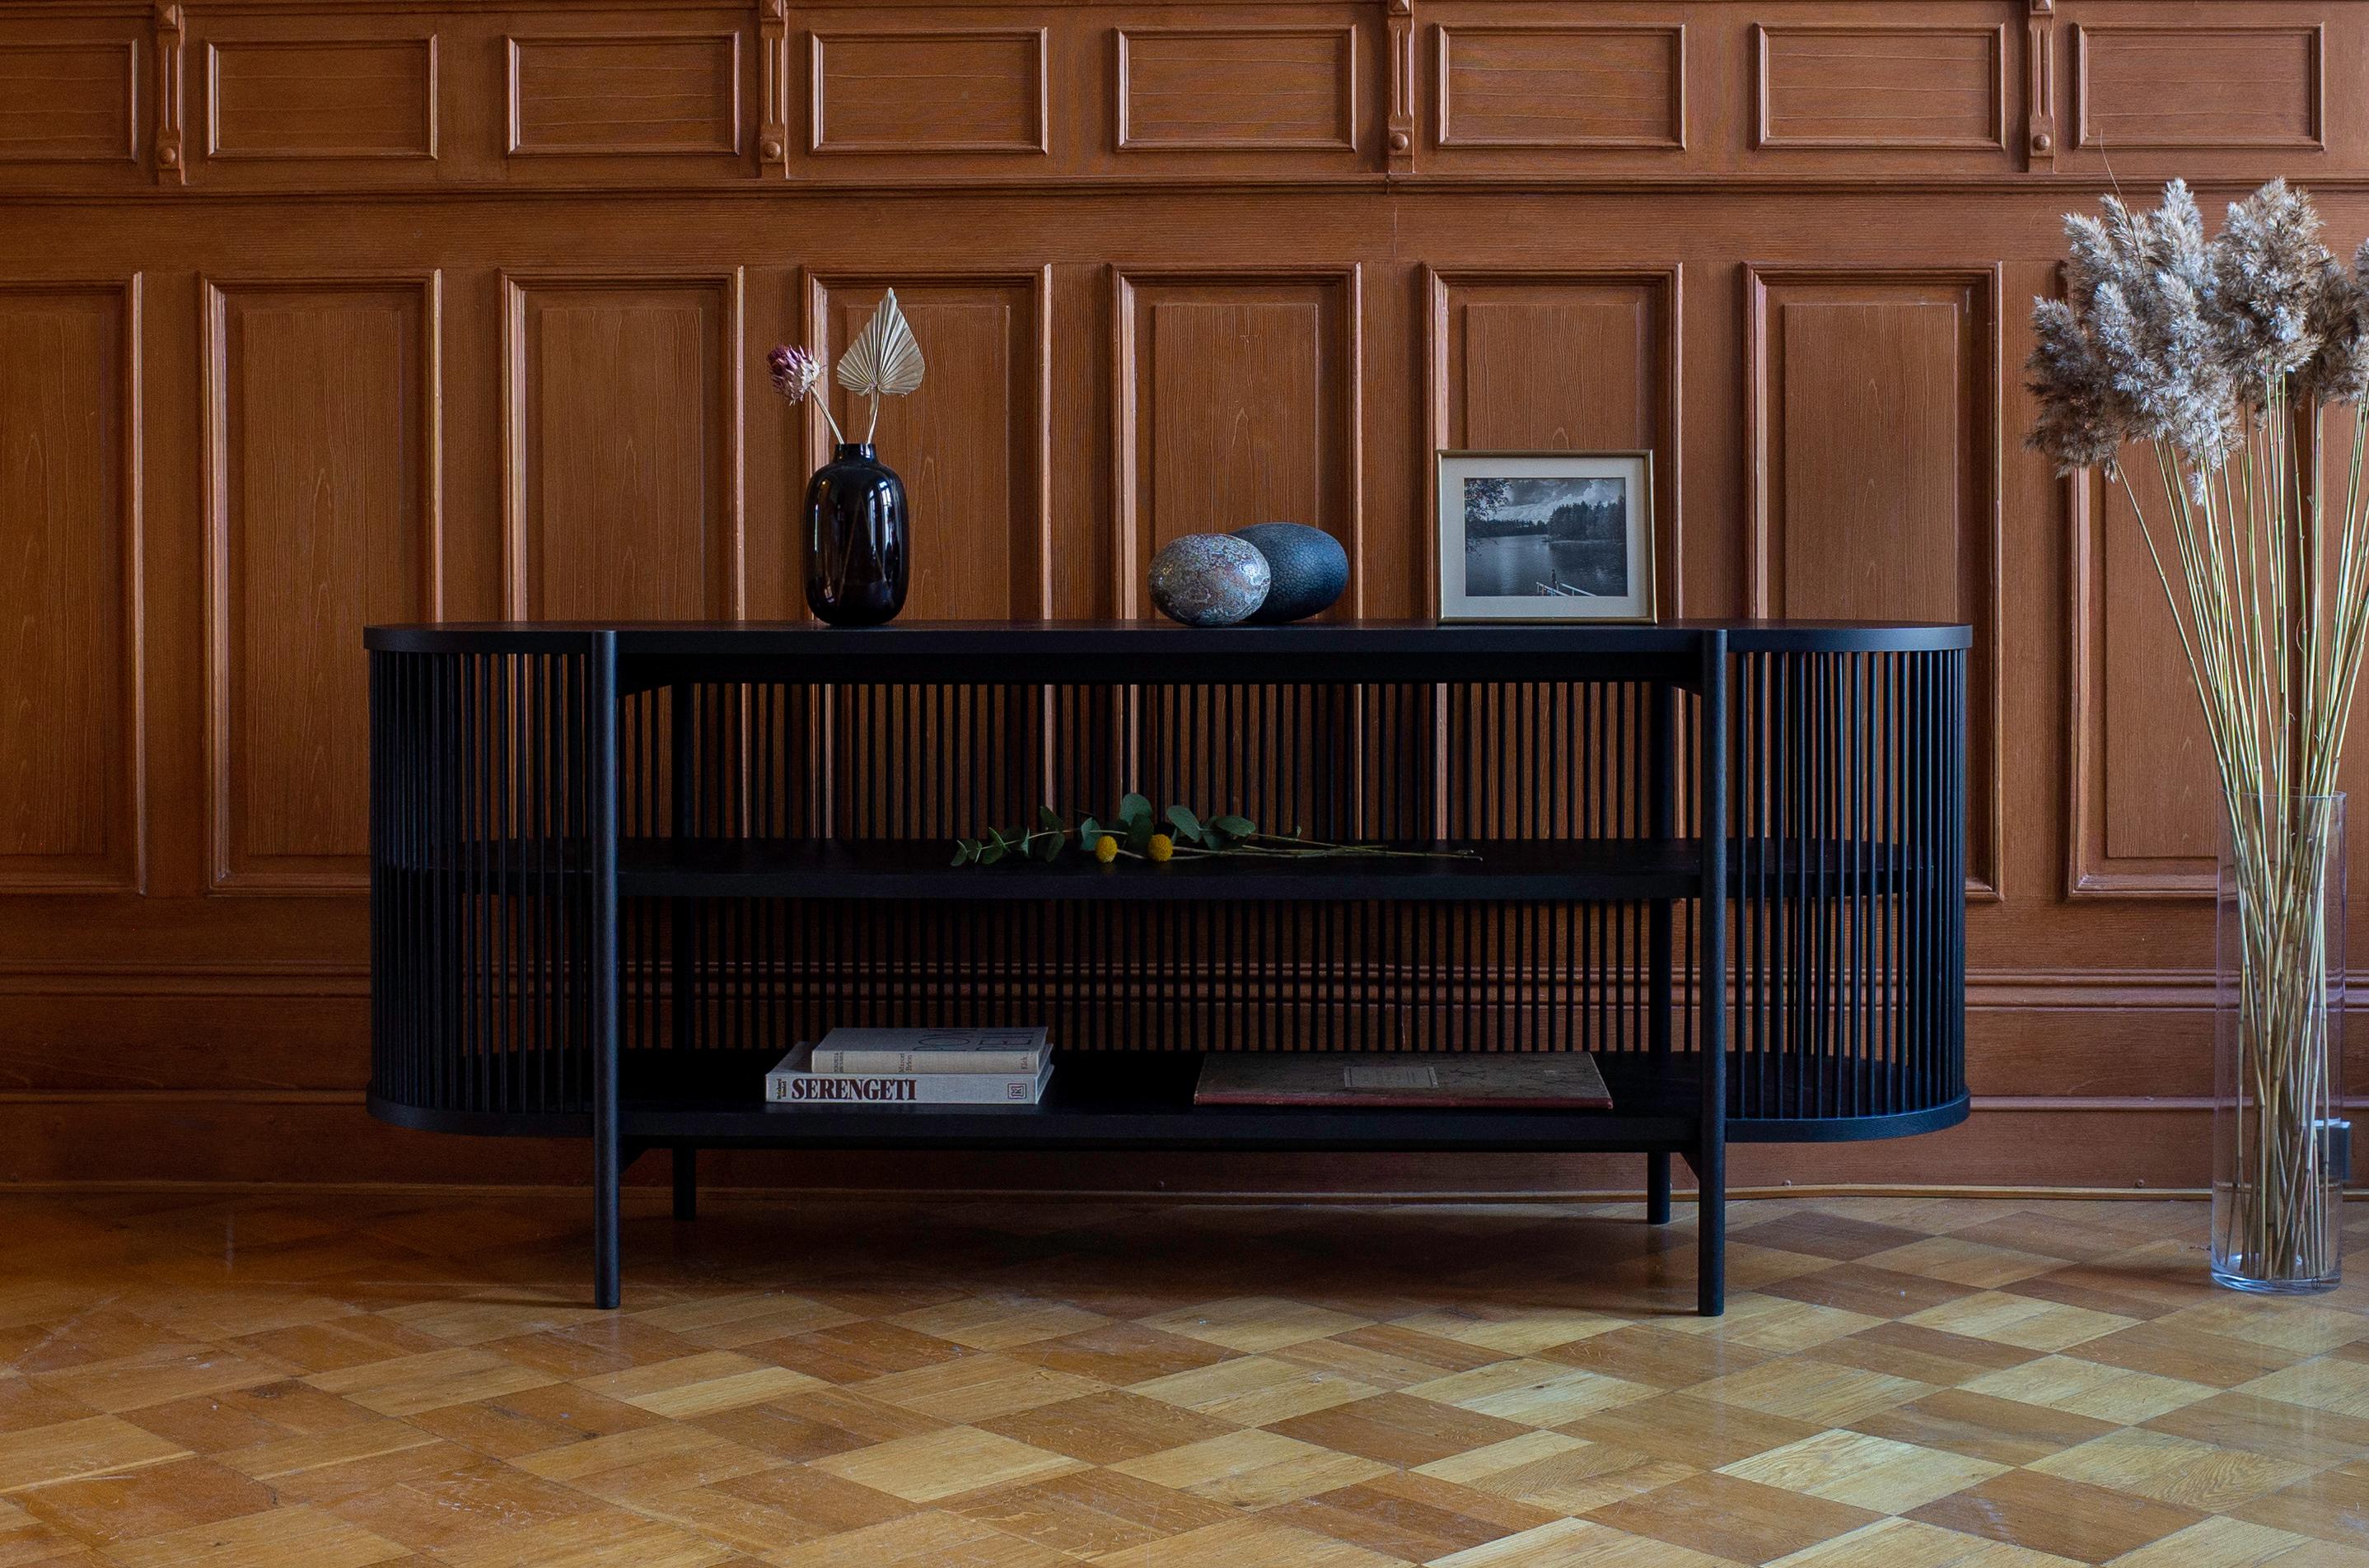 La collection de meubles de rangement Bastone, qui se compose d'une armoire et d'un buffet, a été conçue par le maître ébéniste et designer Antrei Hartikainen pour le studio Poiat. À la frontière de l'art et du design, la collection illustre